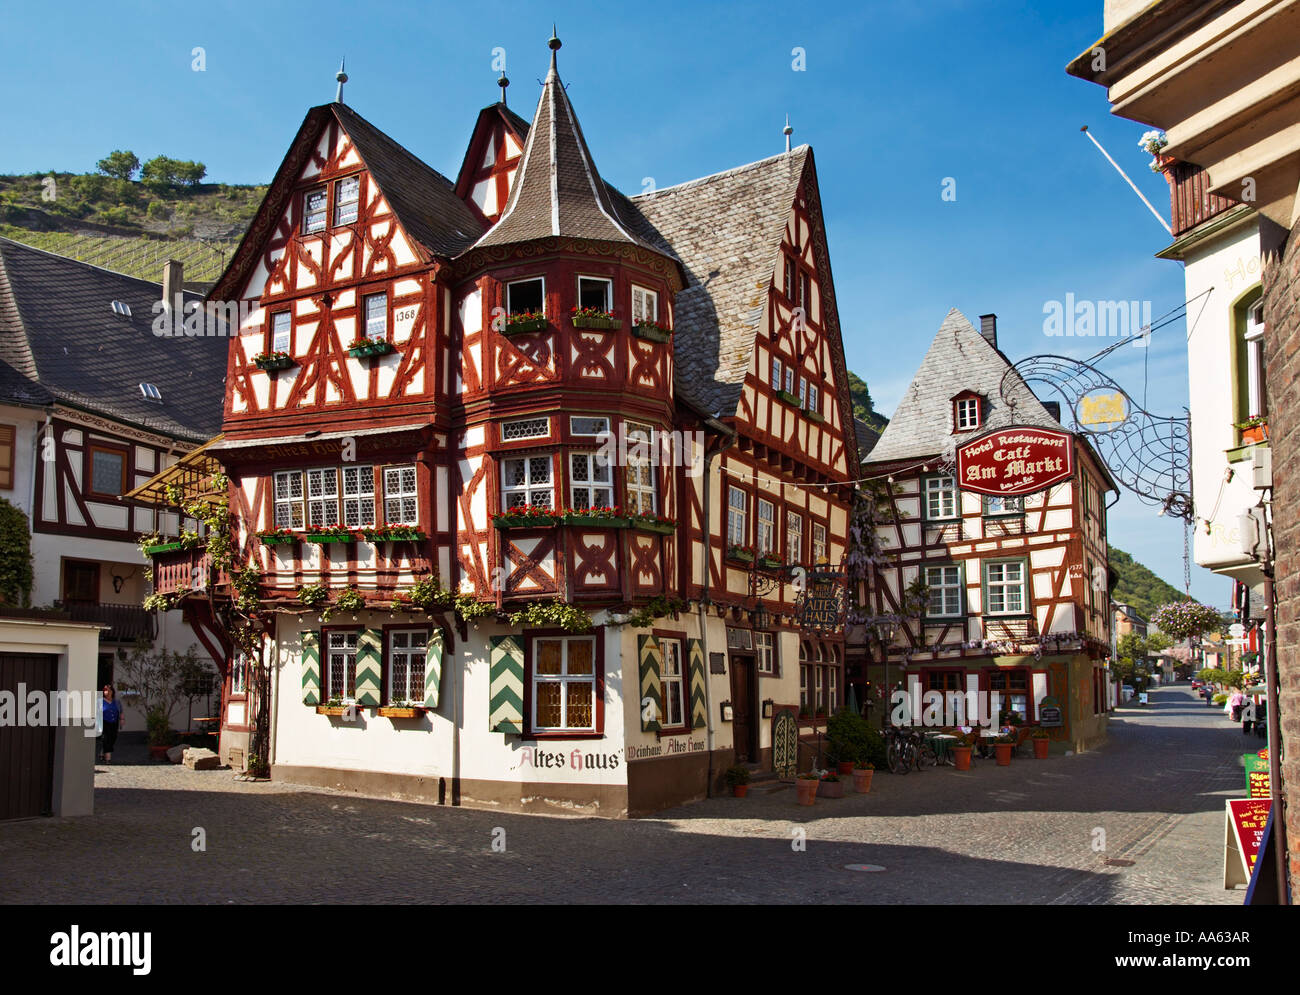 Berühmte alte rote Haus in Bacharach, Deutschland - Altes Haus, Rheinland, Rheintal Stockfoto